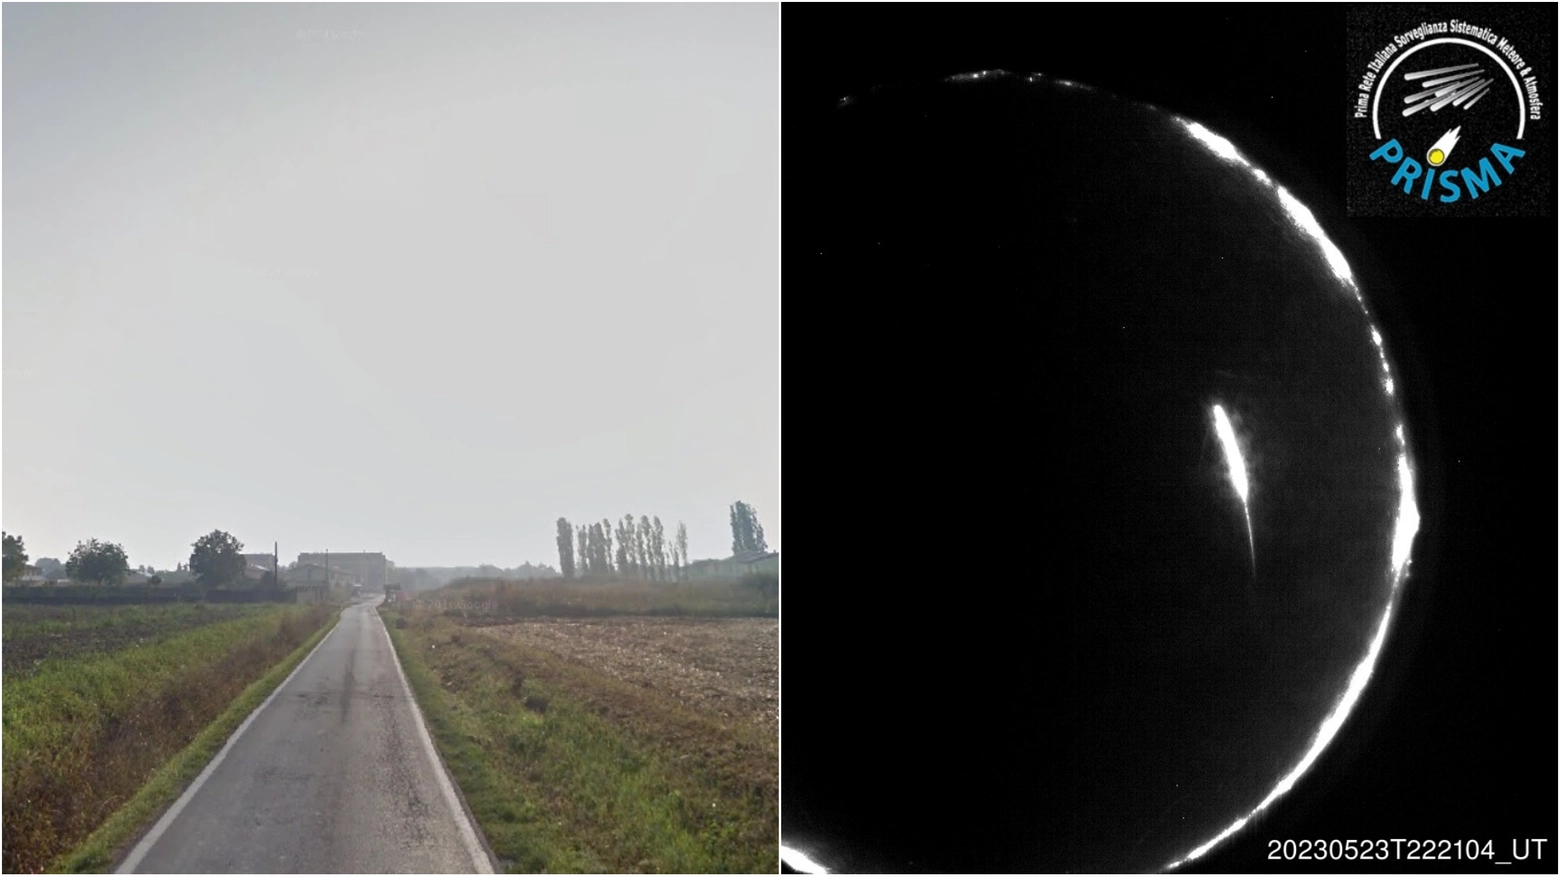 Il territorio di Sospiro (Cremona) dove verranno cercati i resti della meteora. Accanto, il bolide inquadrato dalle camere di Prisma nella notte del 24 maggio